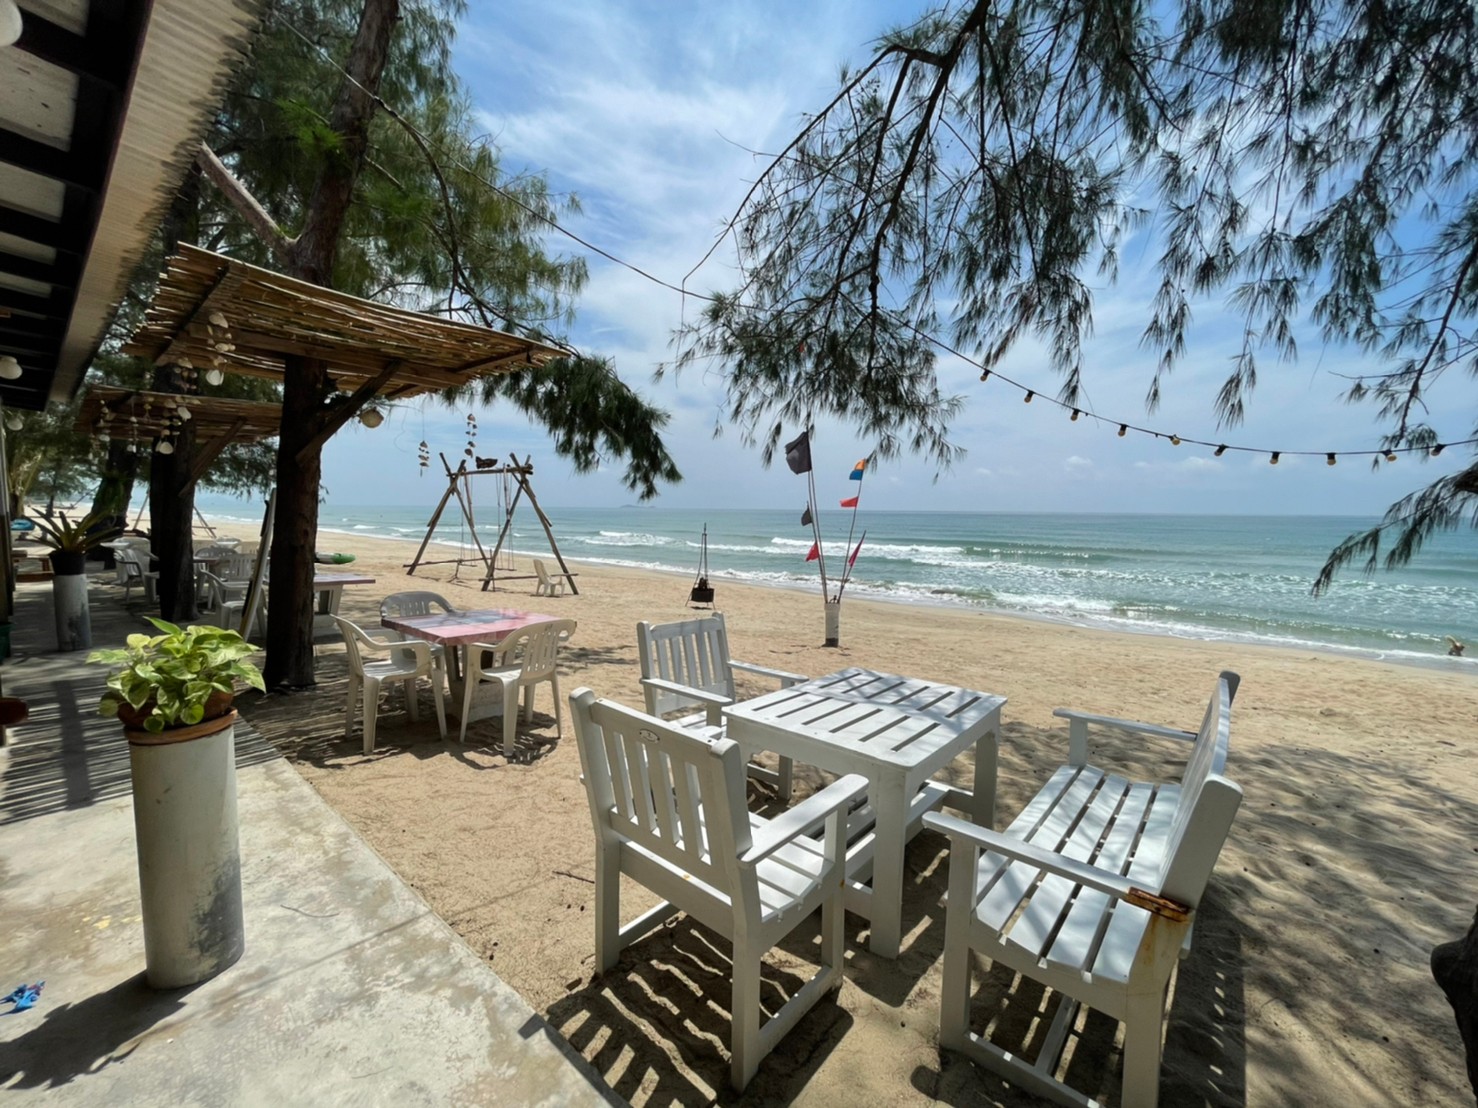 Foto af Saeng Arun Beach - populært sted blandt afslapningskendere